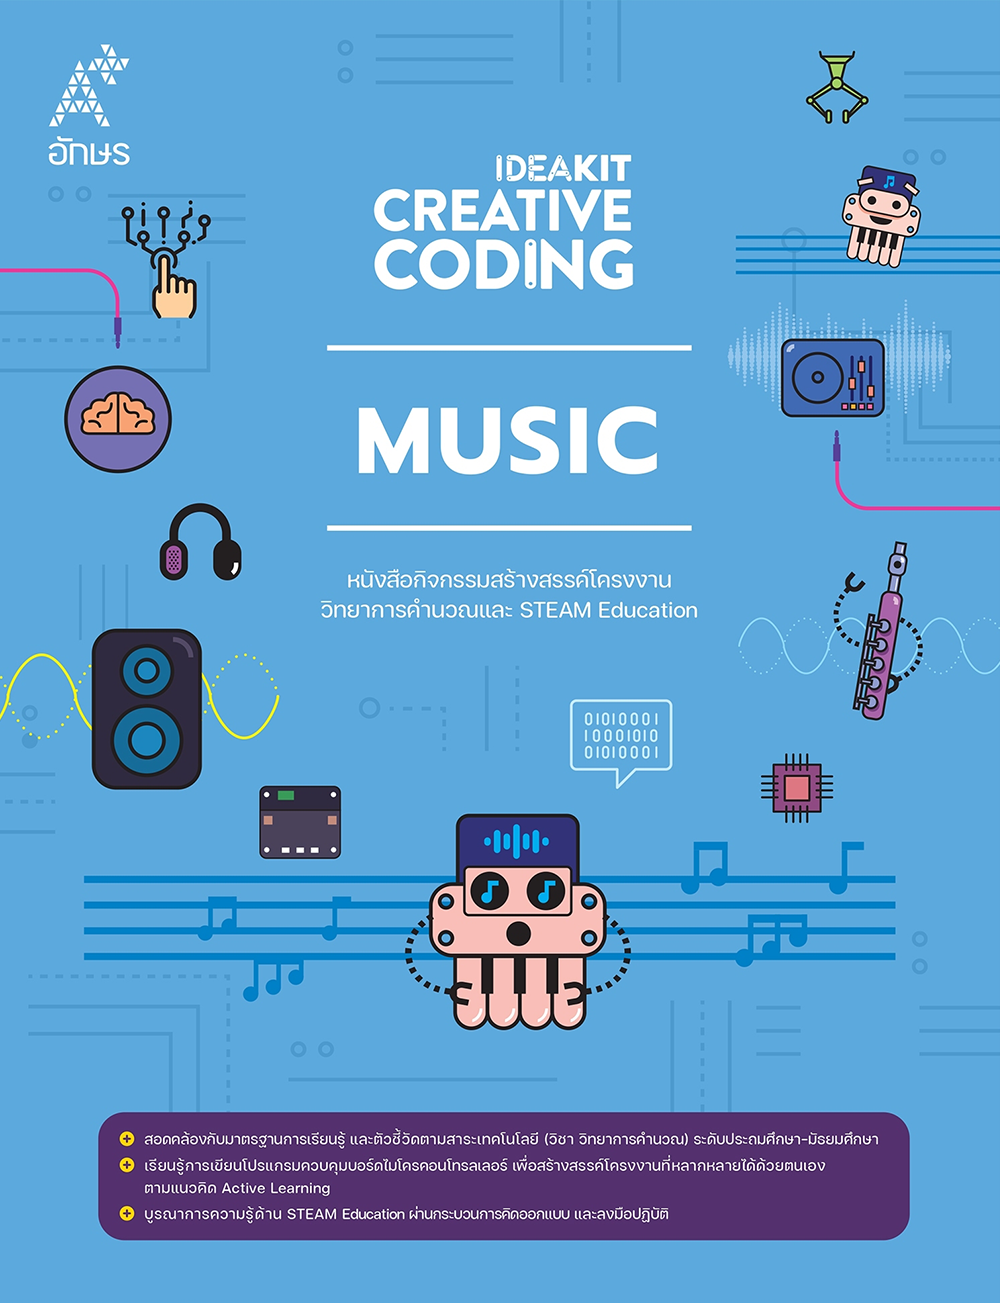 หนังสือกิจกรรม IDEAKIT: Creative Coding ชุด Music